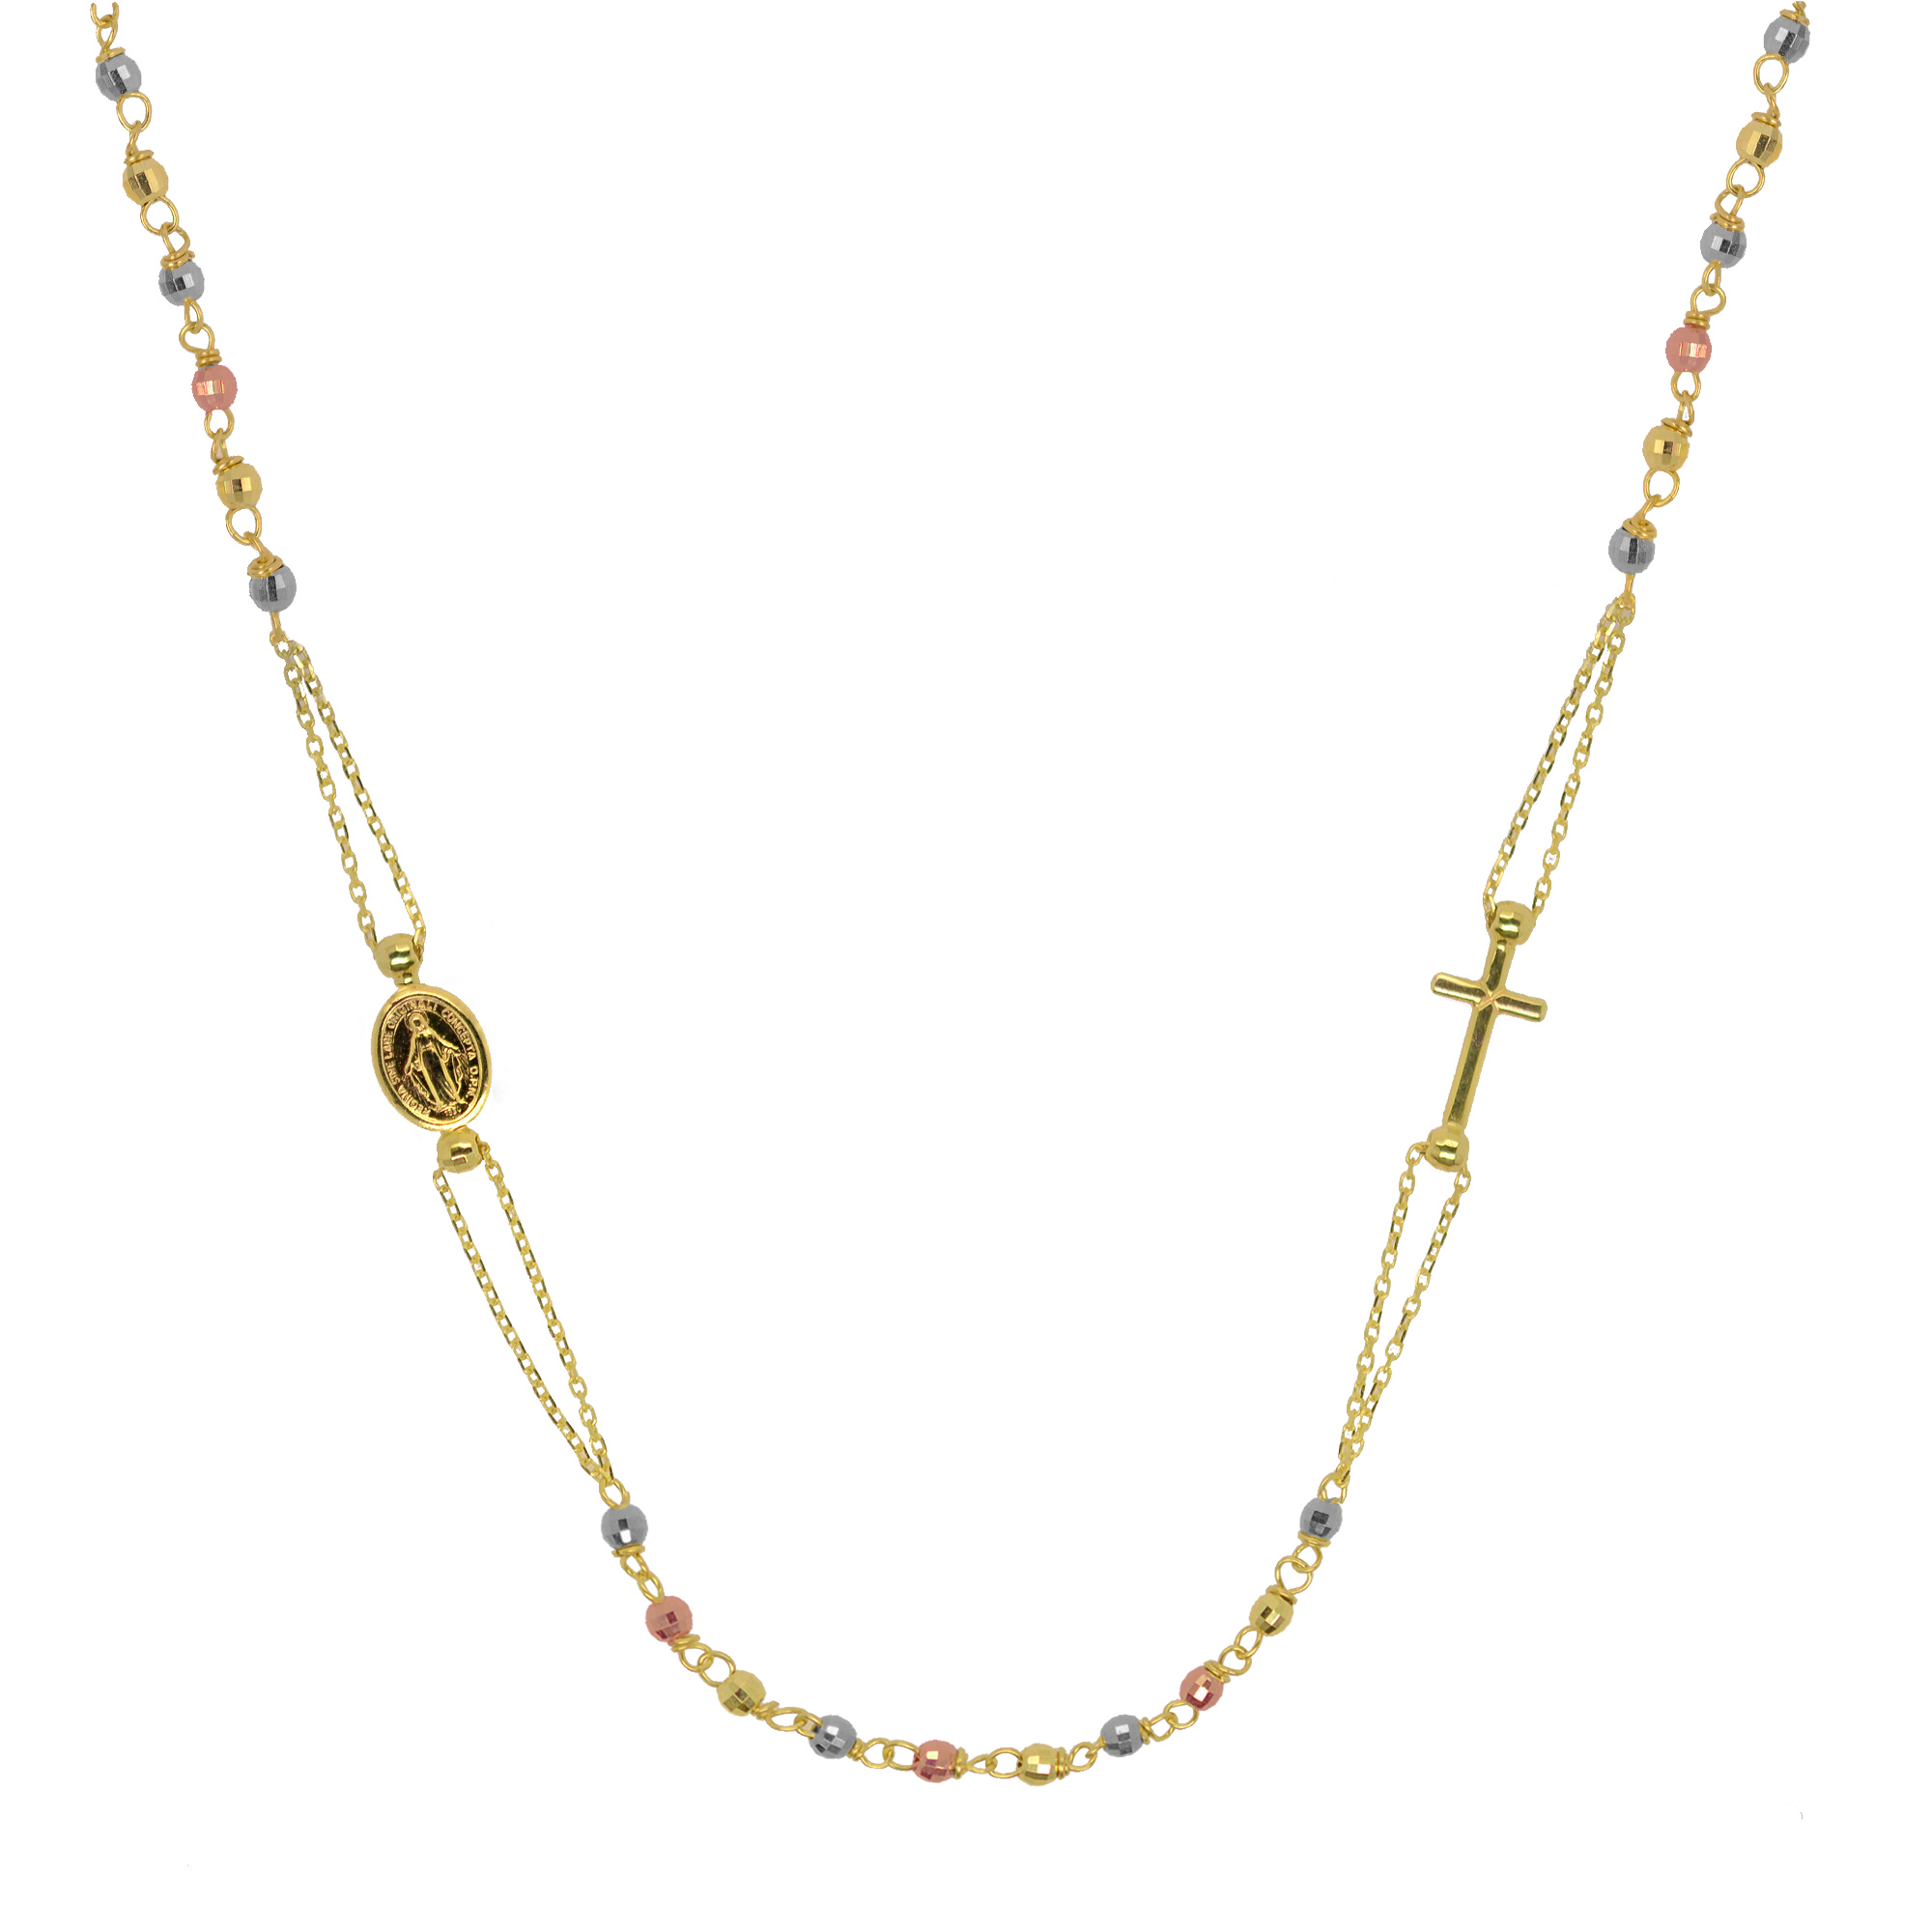 Evolution Group Zlatý 14 karátový náhrdelník růženec s křížem a medailonkem s Pannou Marií RŽ08 multi